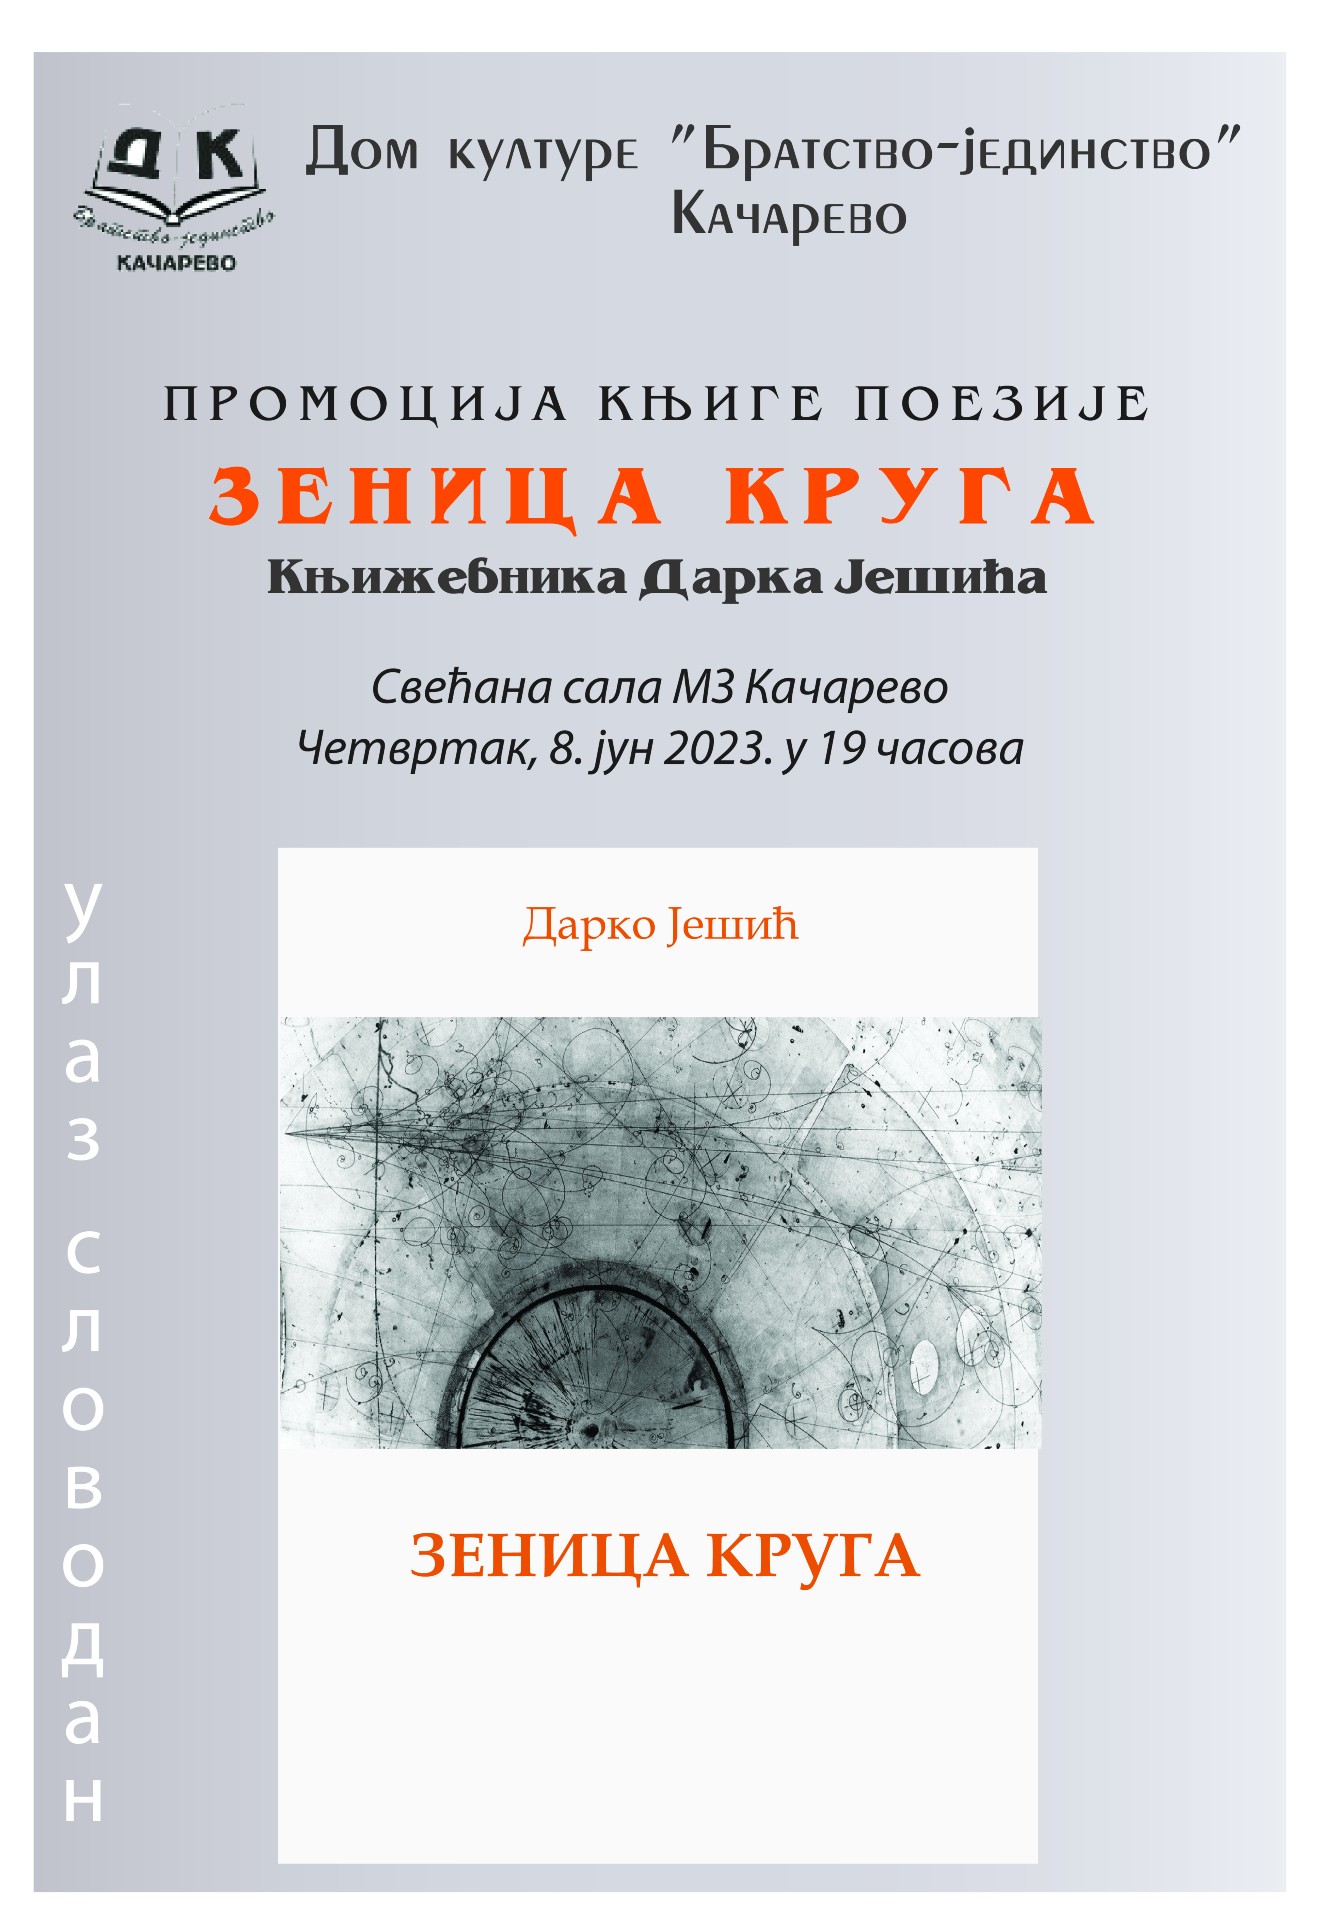 Kačarevo: Promocija knjige poezije "Zenica kruga" 8. juna